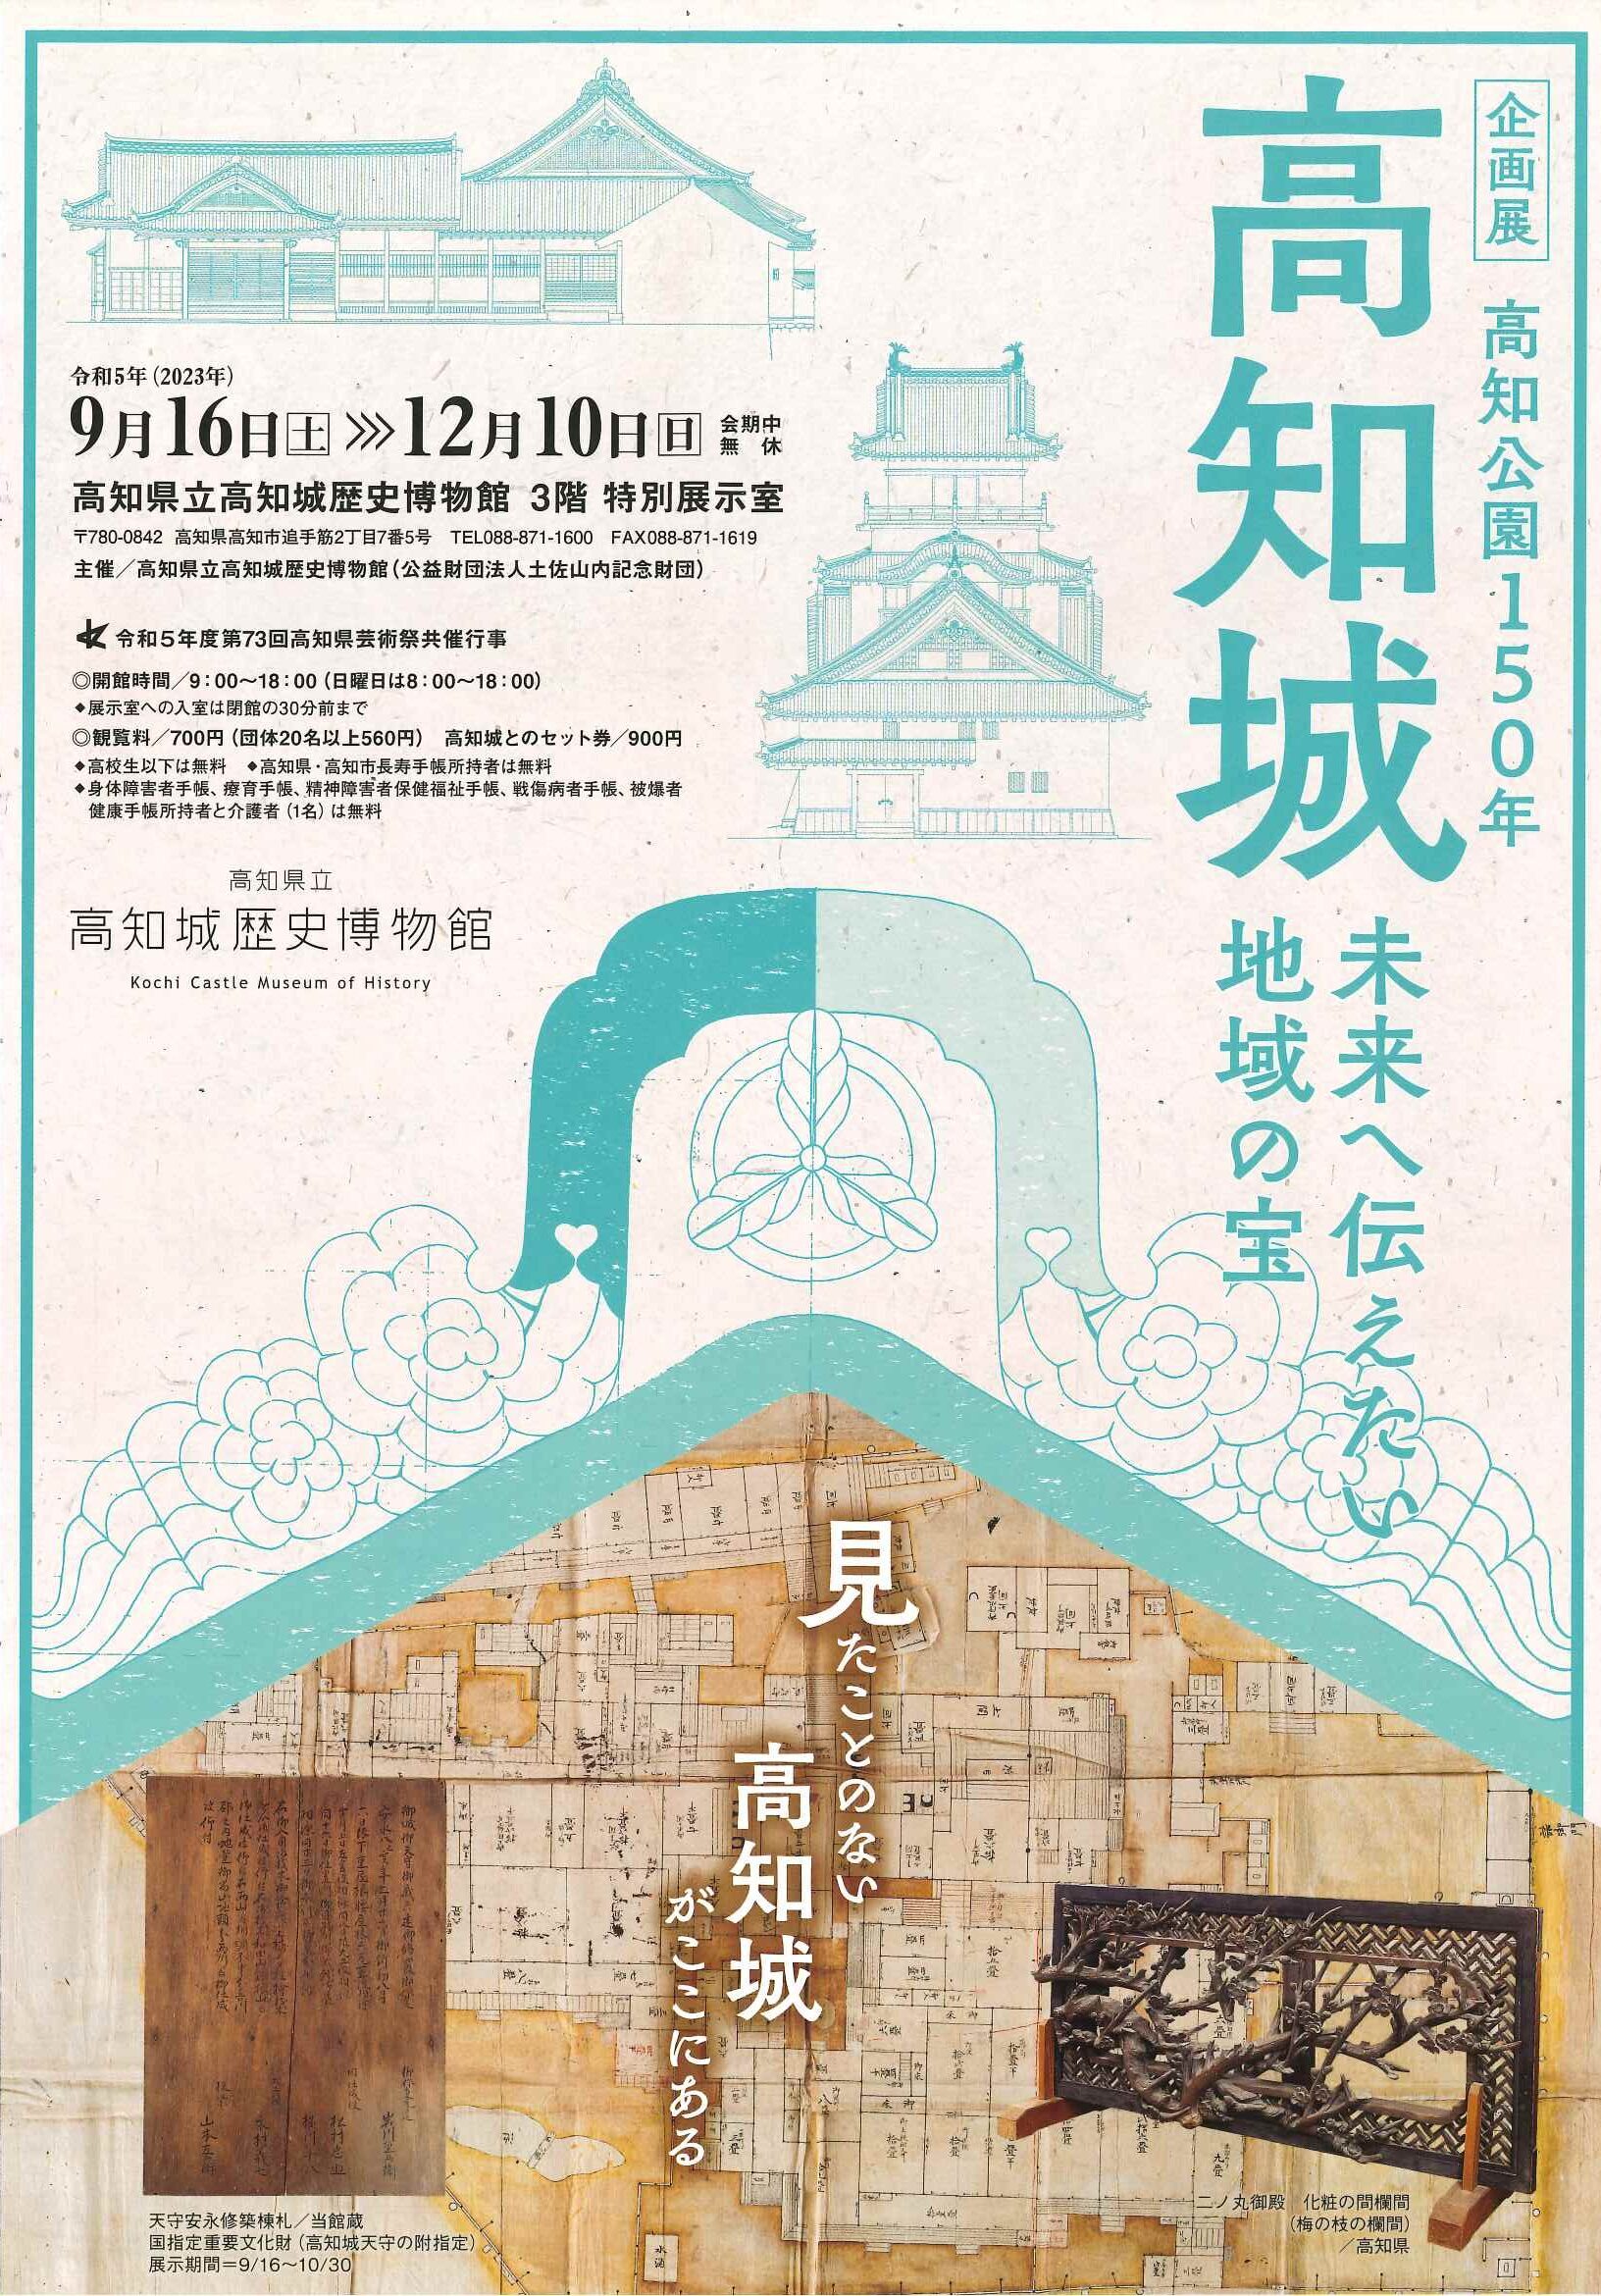 高知城と博物館の連携企画「追手門と詰門の特別見学会」